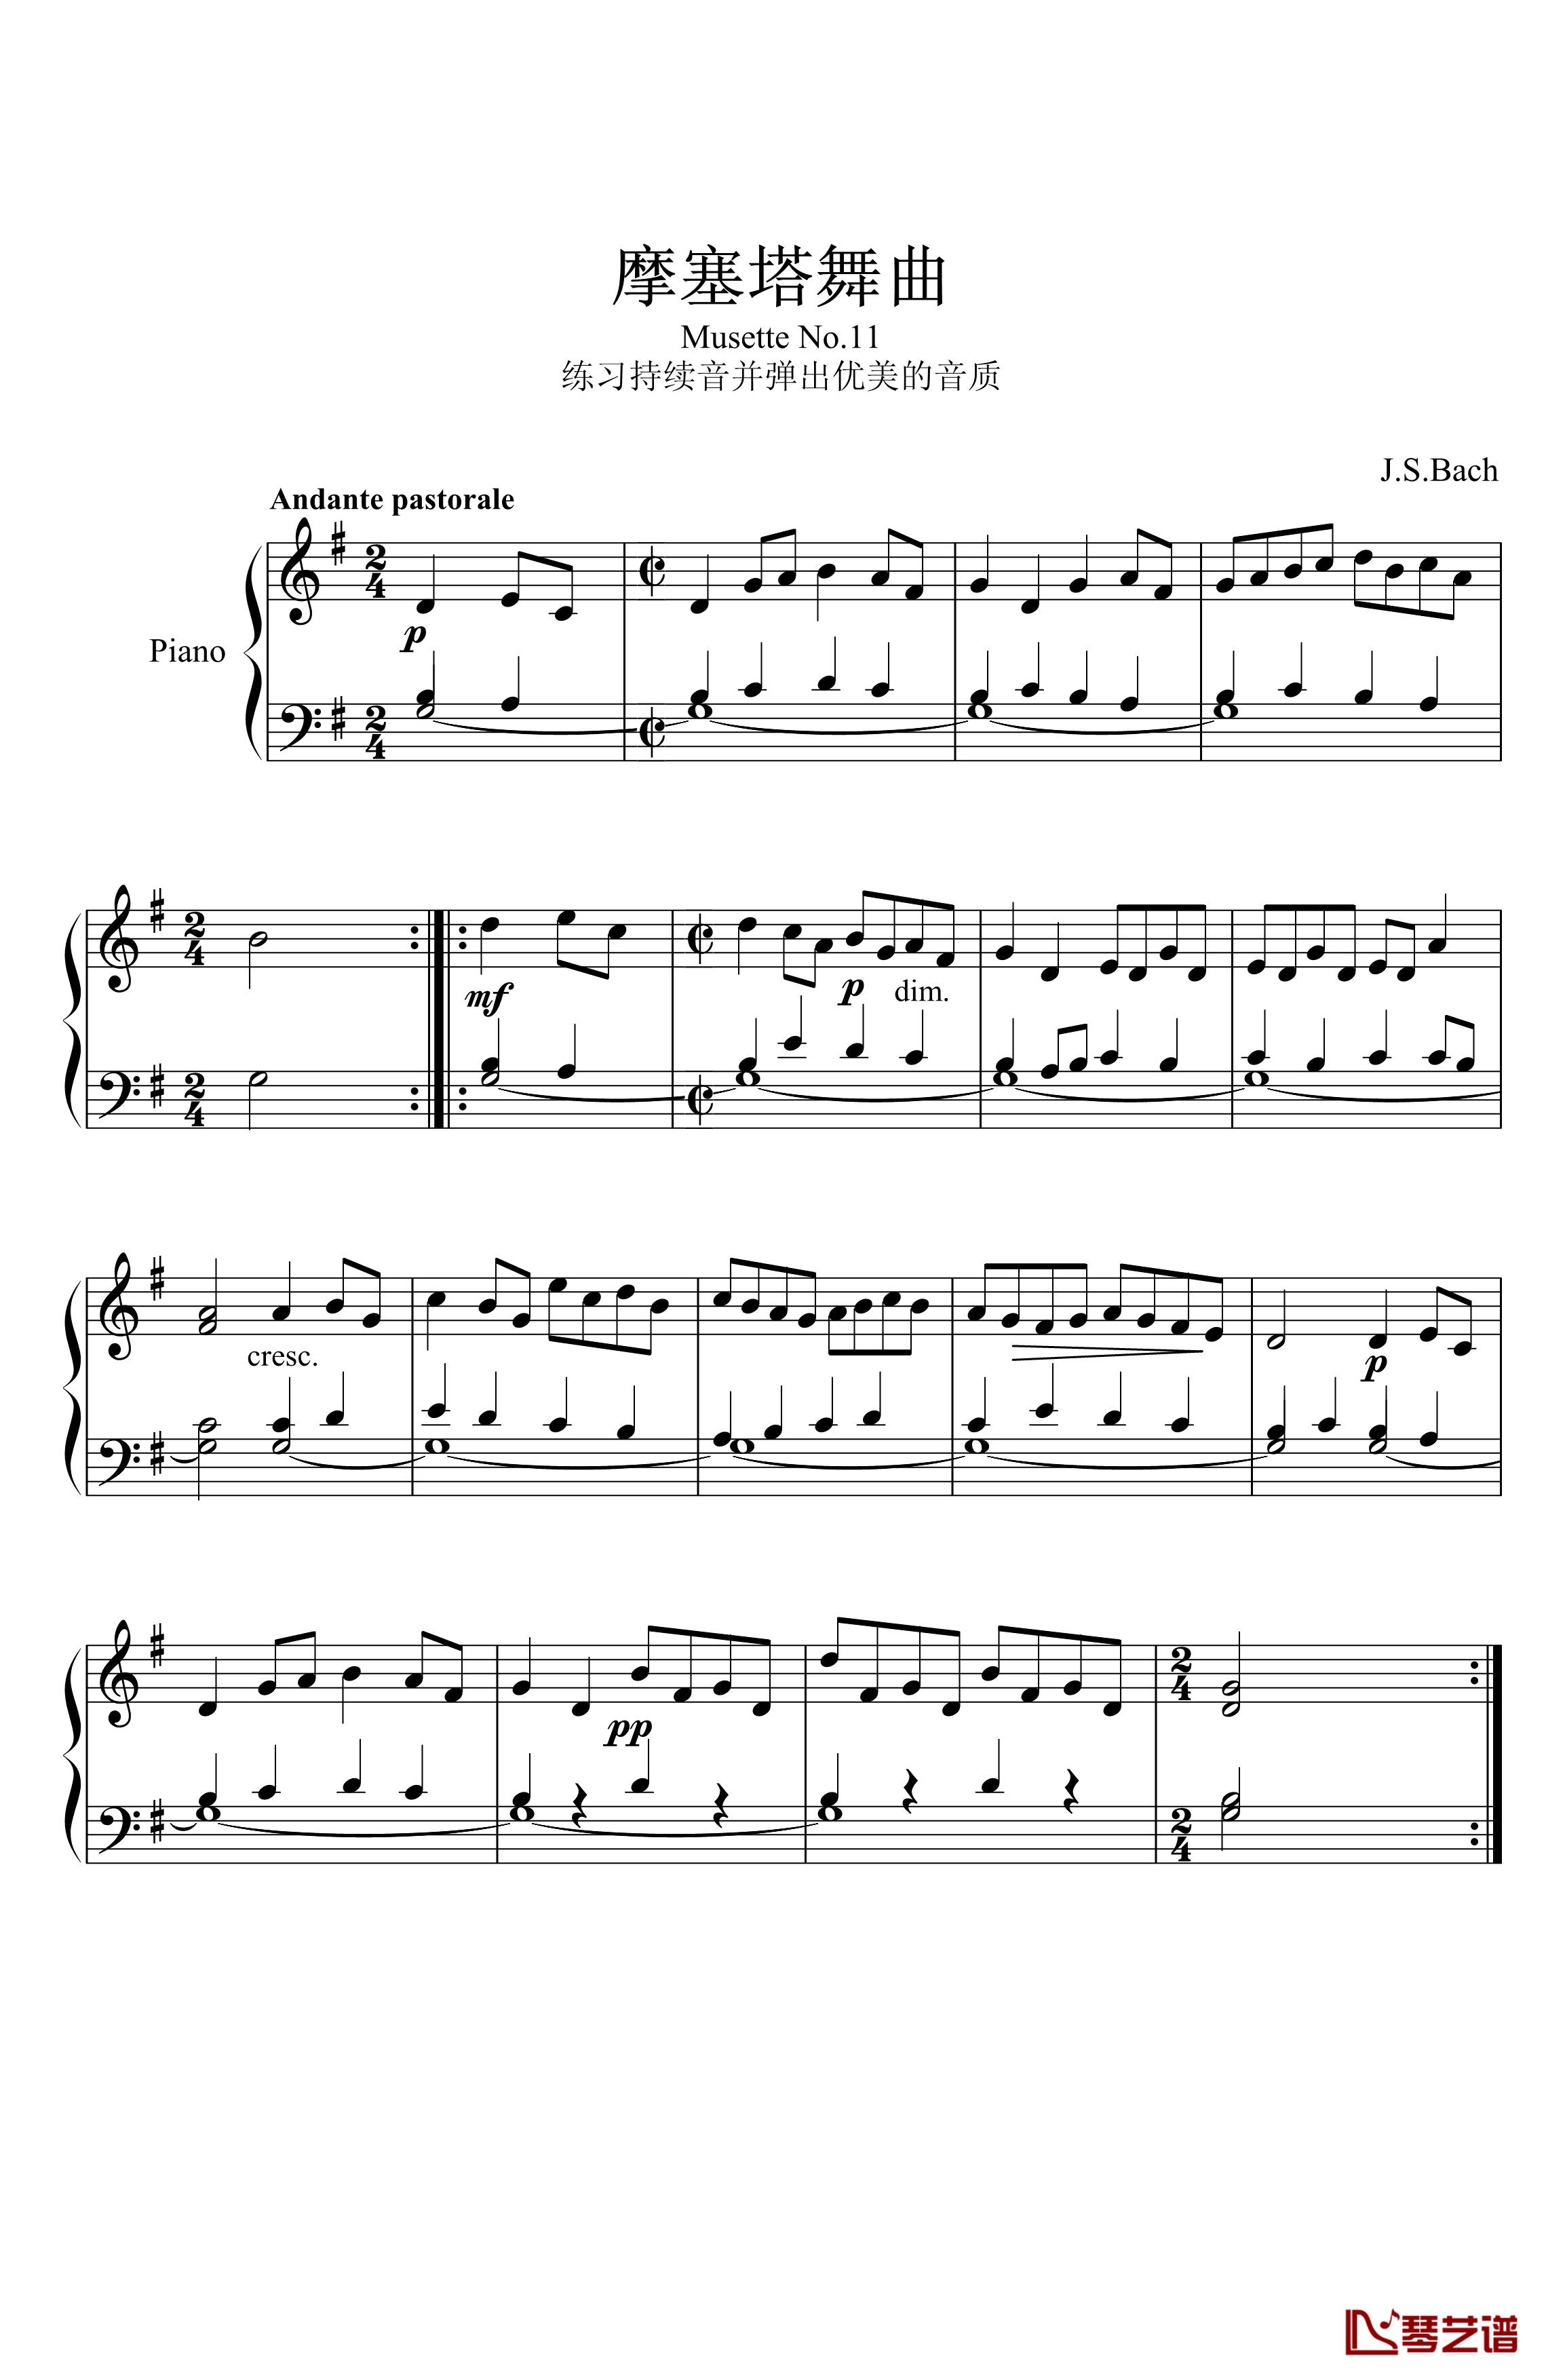 摩塞塔舞曲No.11钢琴谱-巴赫-P.E.Bach1